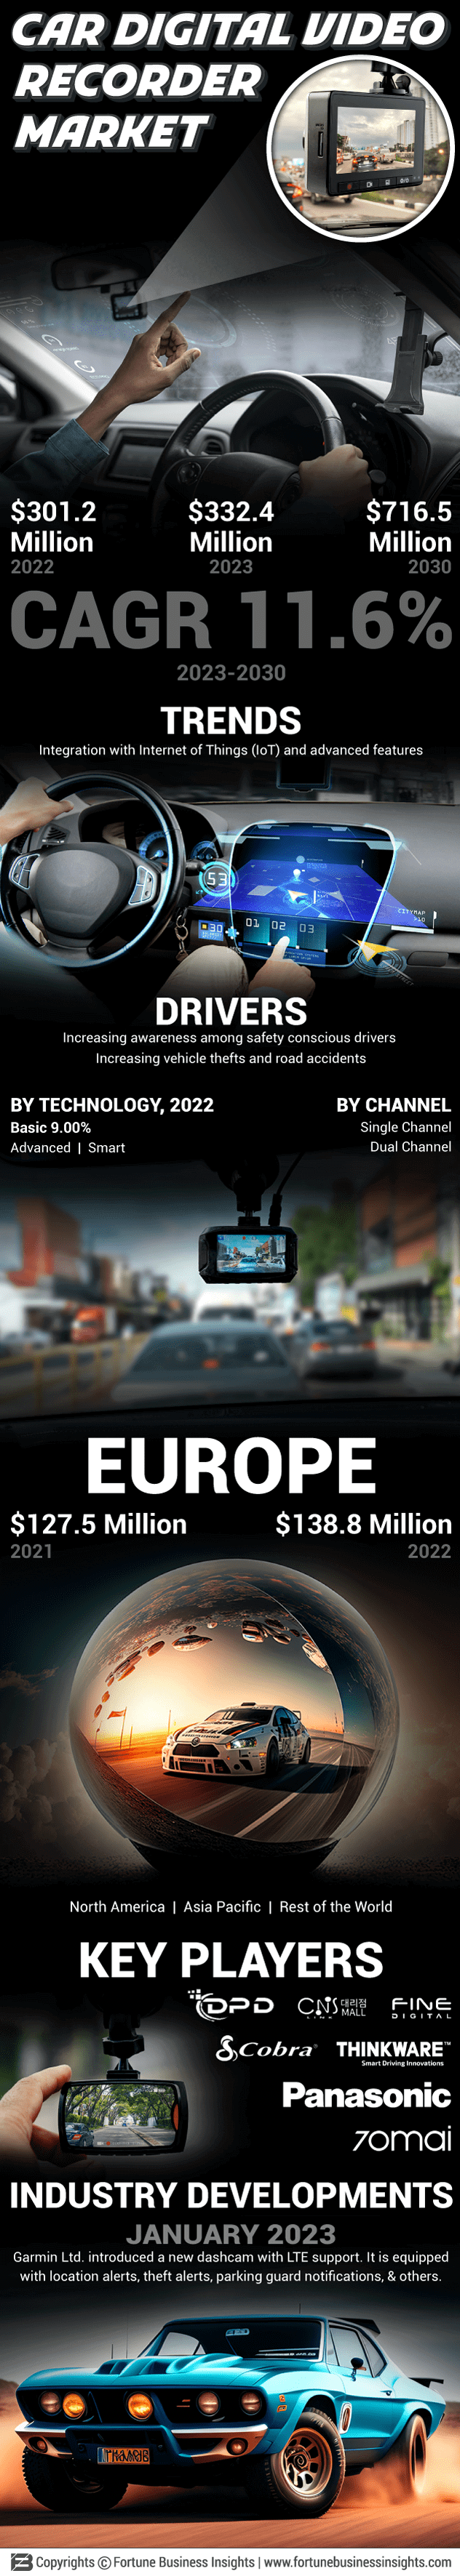 Car DVR (Digital Video Recorder) Market